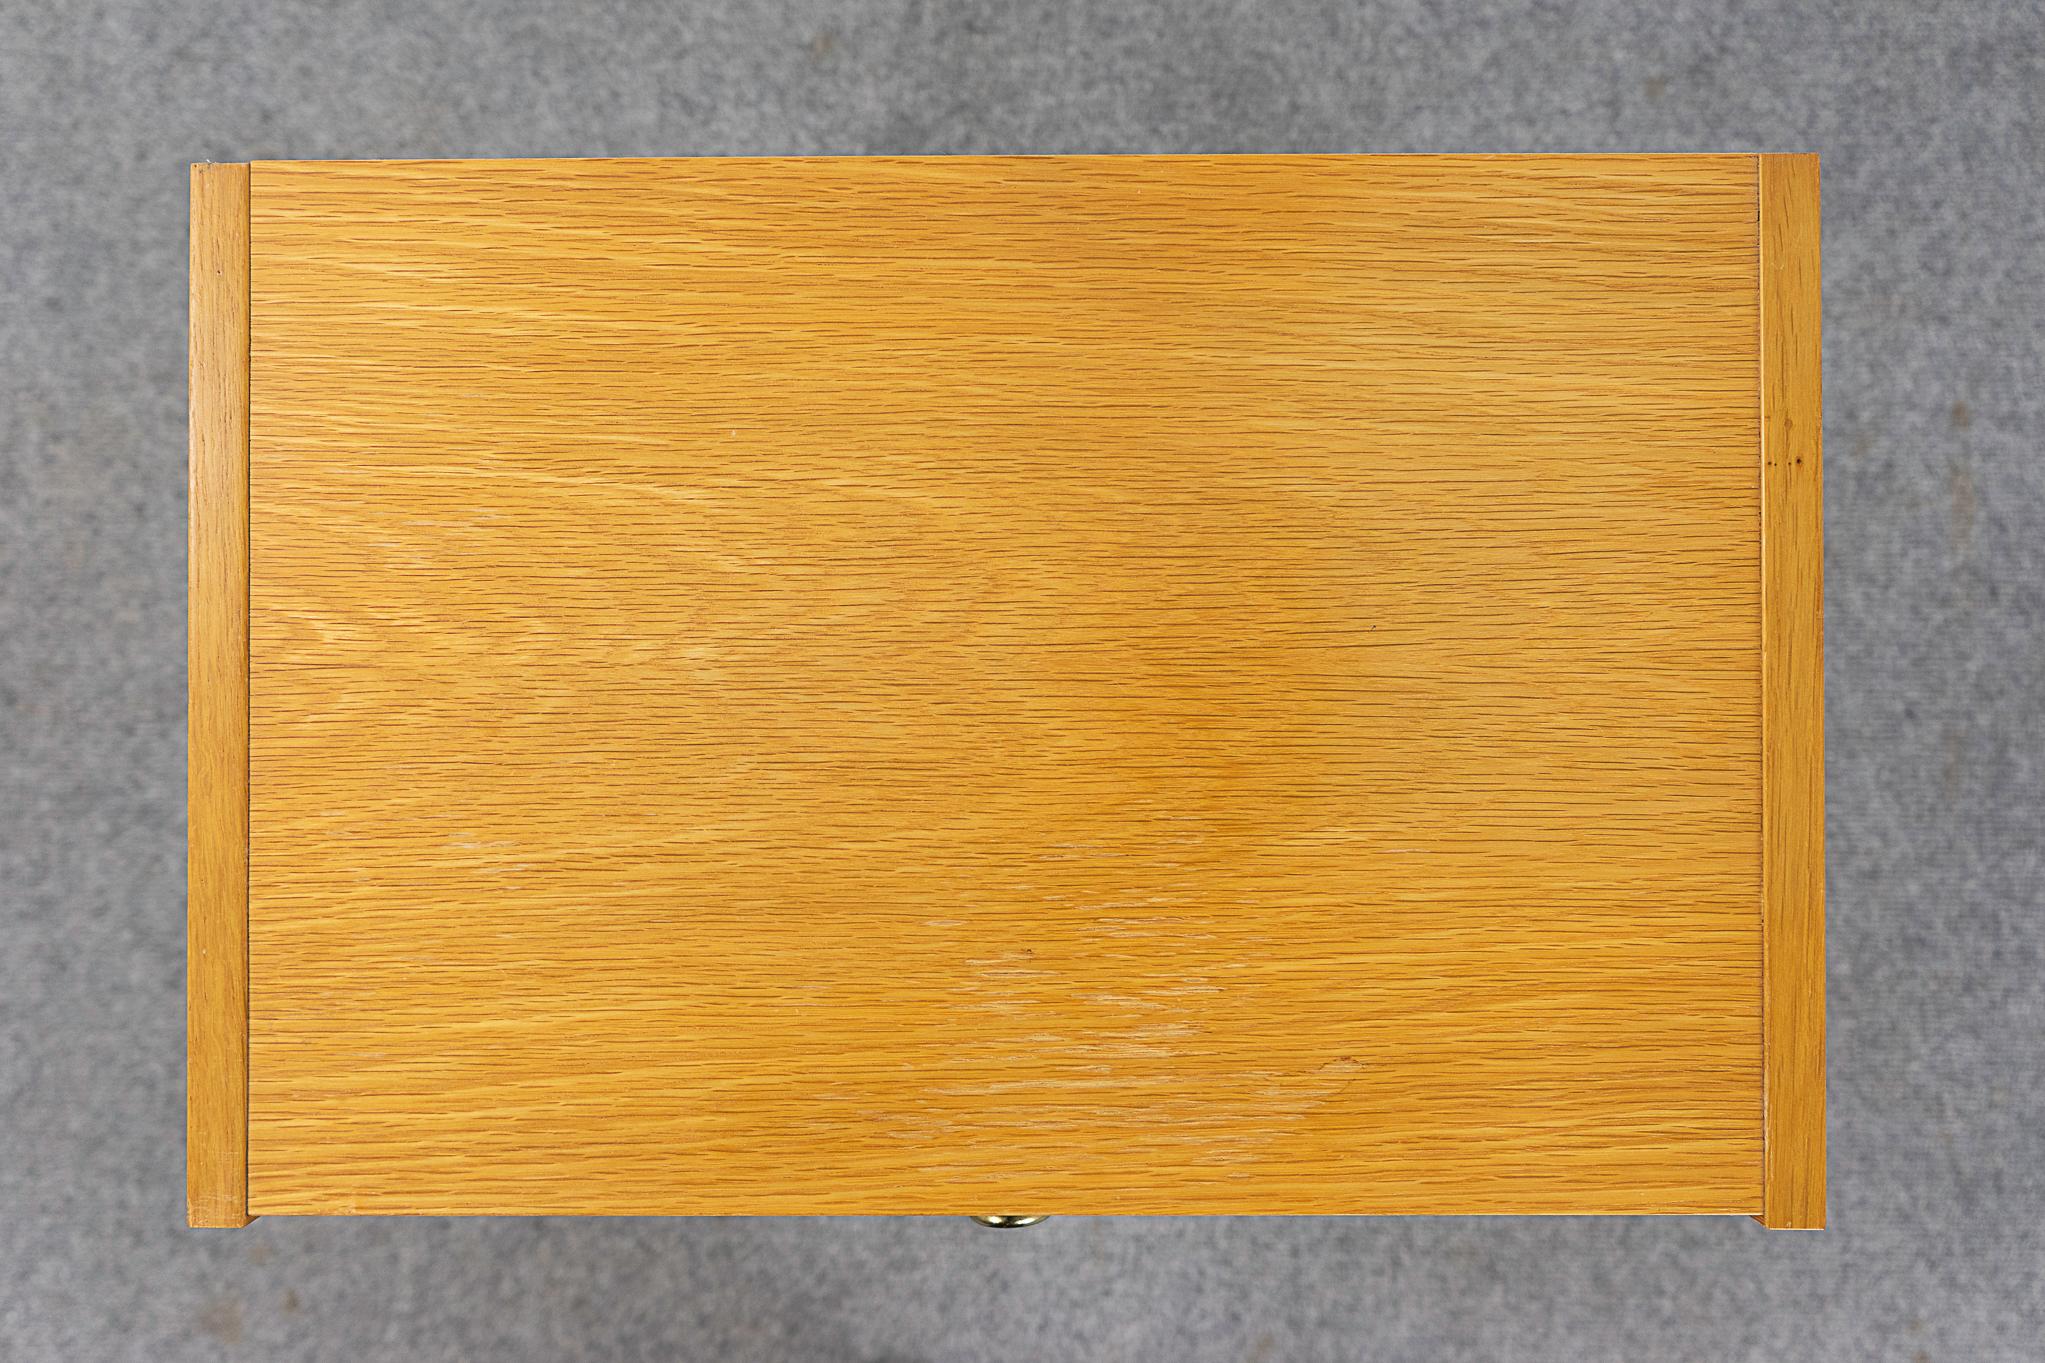 Mid-20th Century Danish Modern Oak Bedside Table For Sale